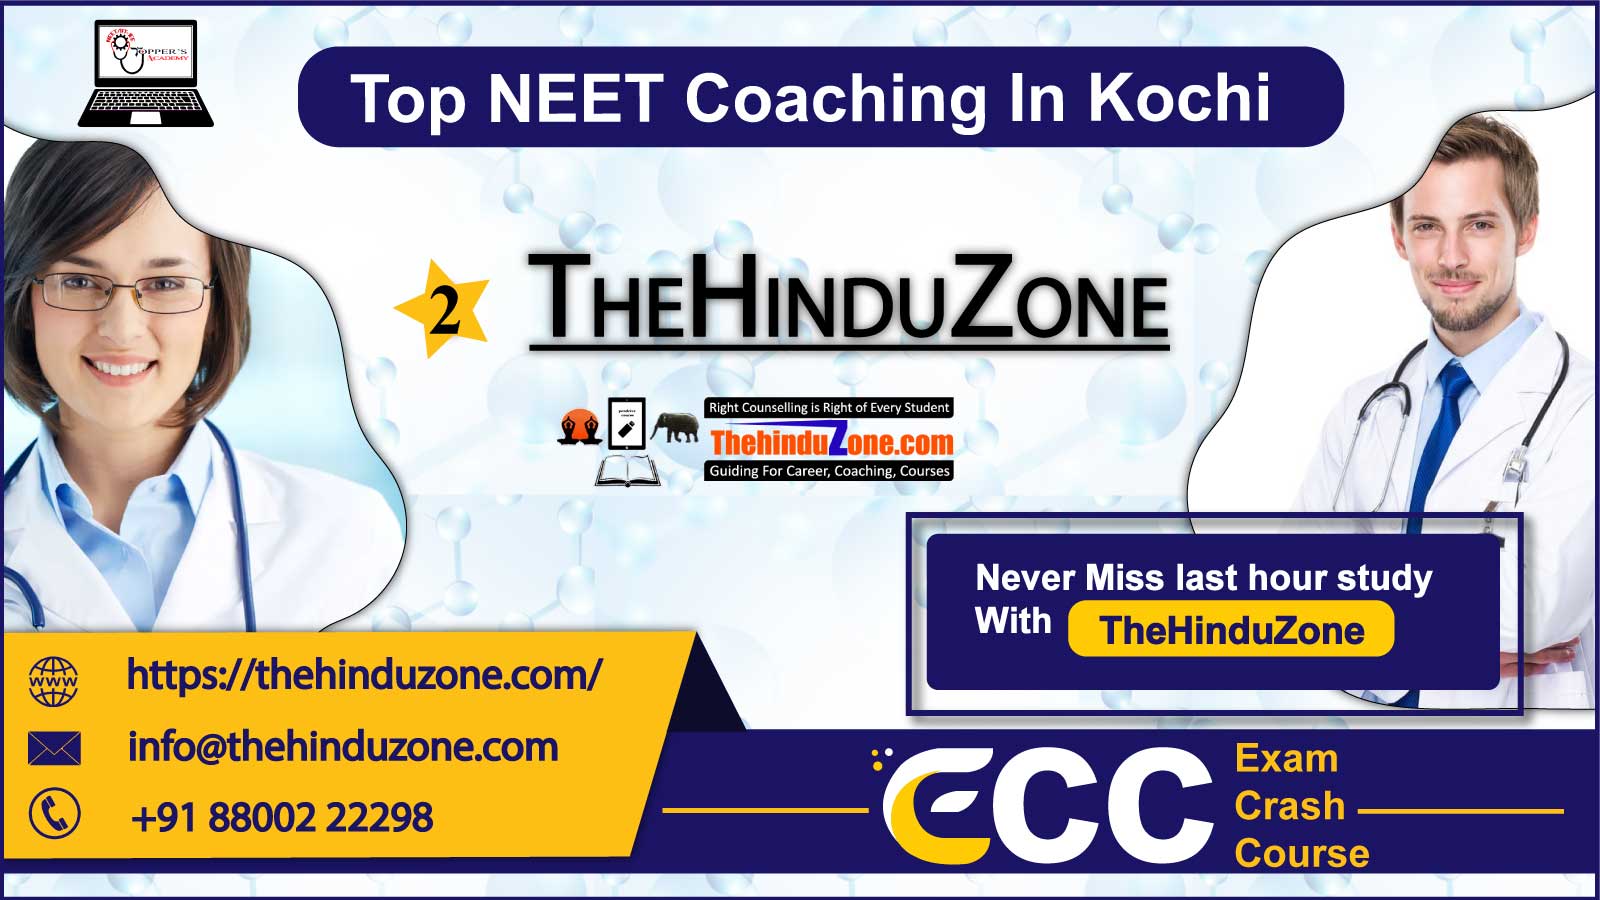 TheHinduZone NEET Coaching in Kochi